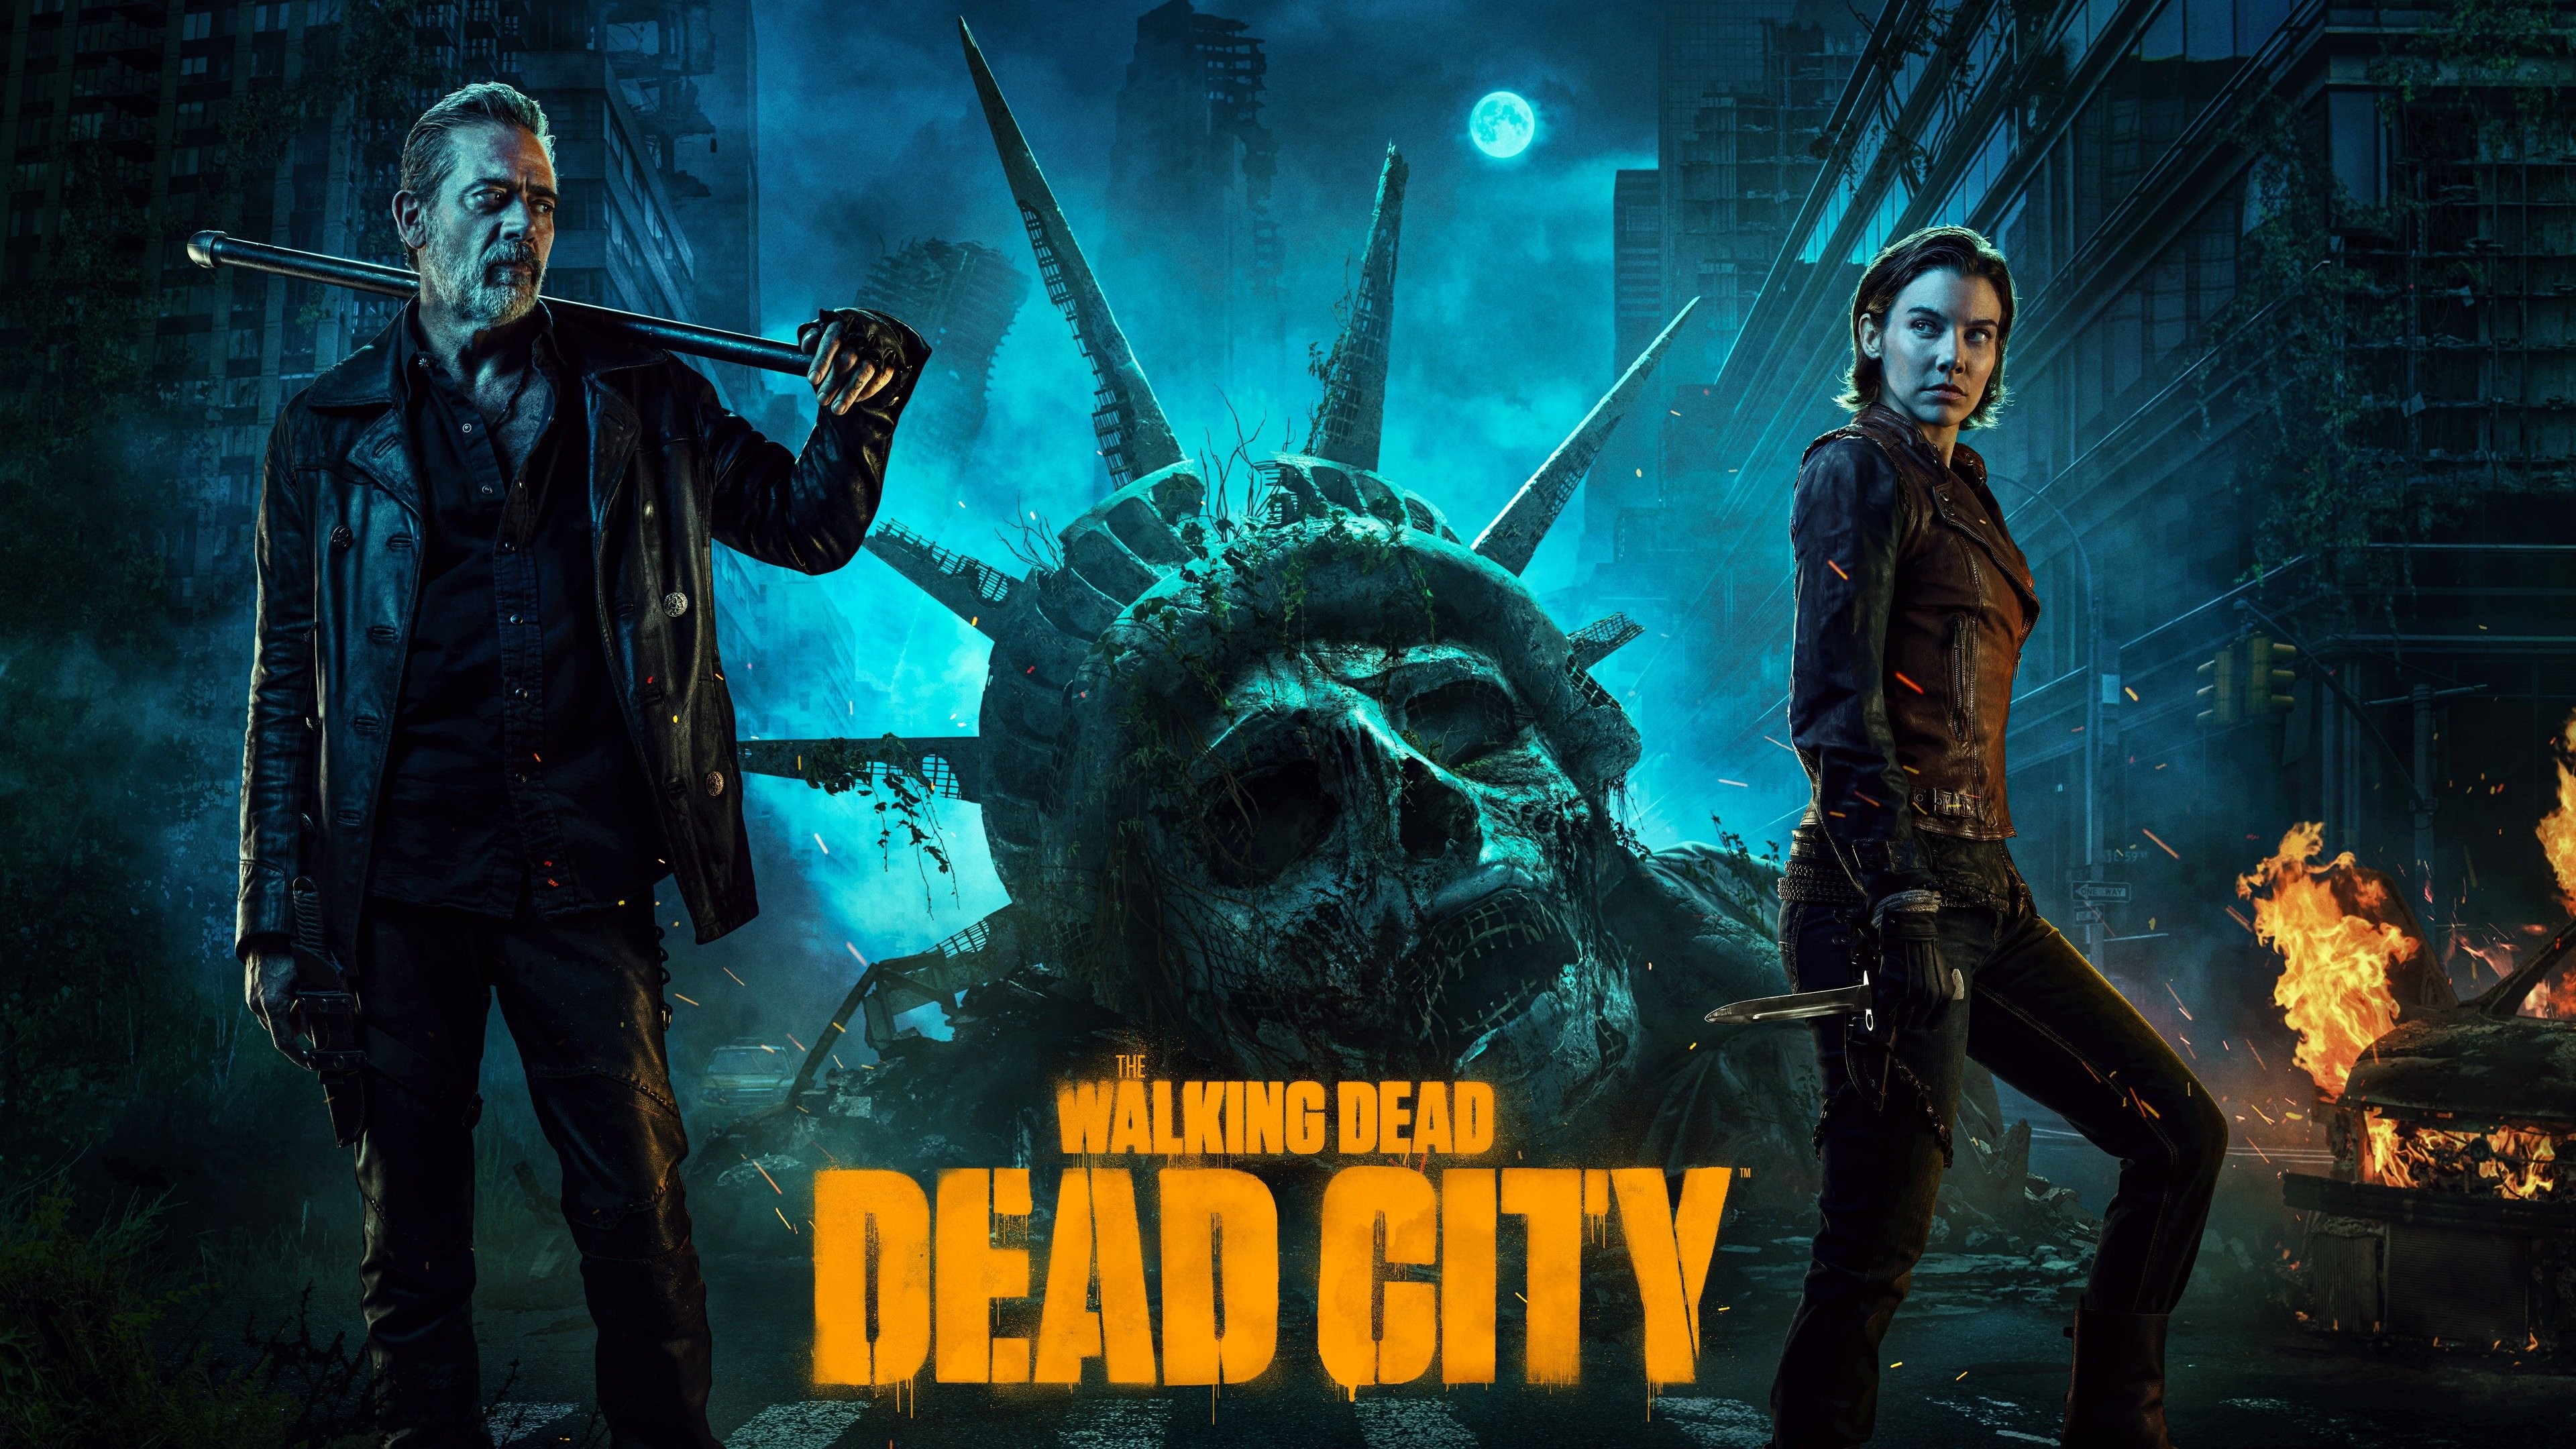 The Walking Dead: Dead City - Wikipedia